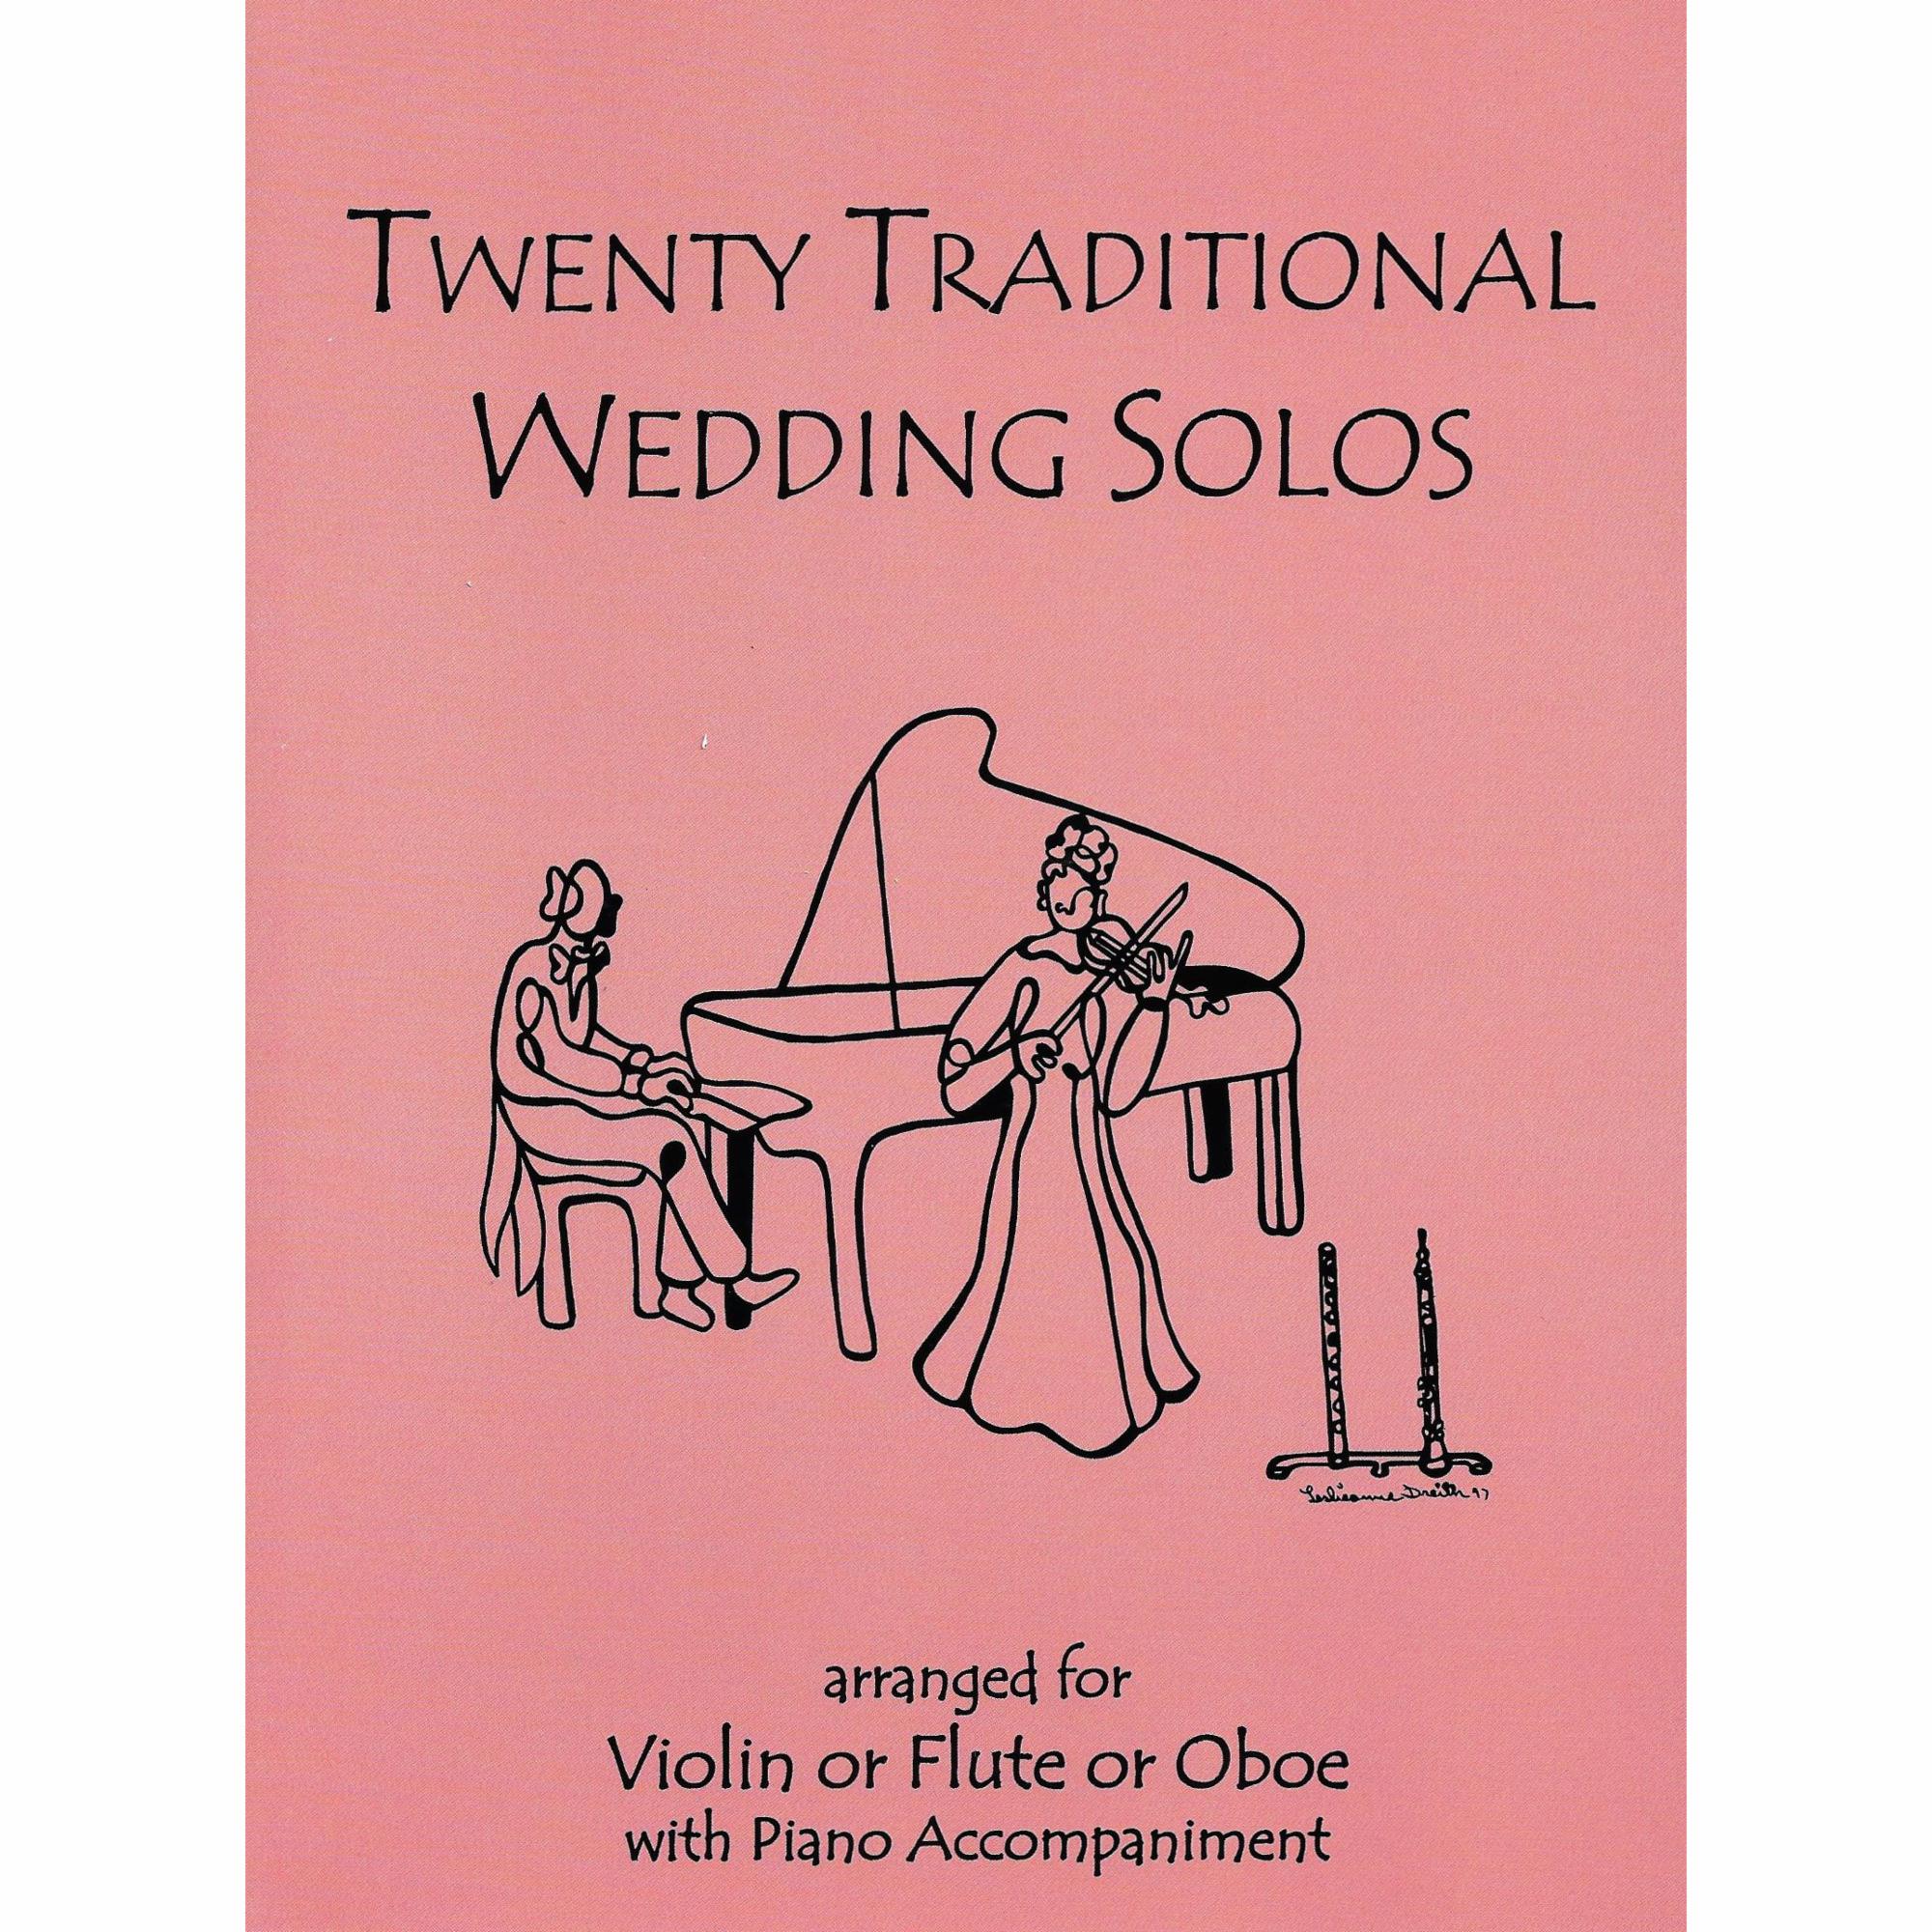 Twenty Traditional Wedding Solos for Violin, Viola, or Cello and Piano